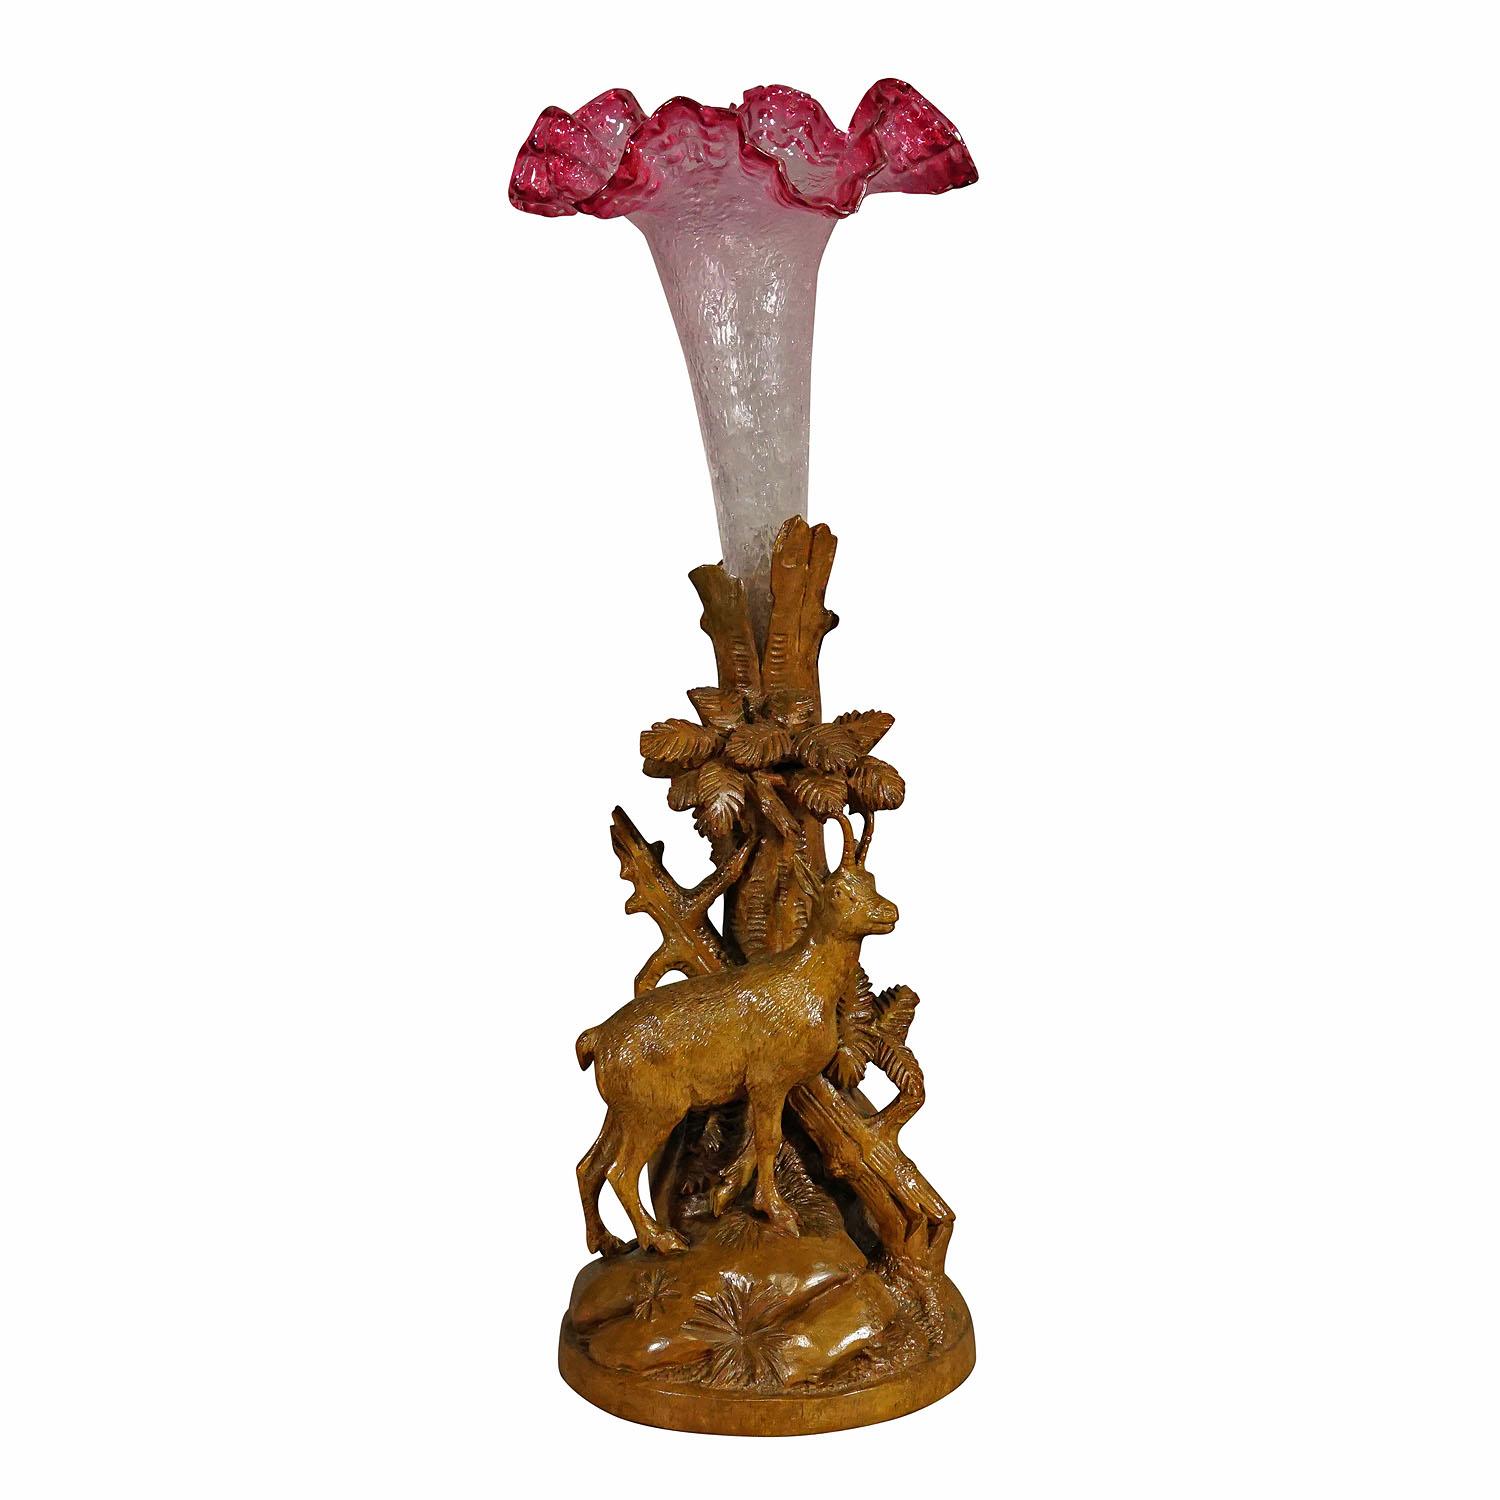 Chamois en bois finement sculpté avec vase en verre, Brienz, vers 1900.

Sculpture en bois délicatement sculptée à la main représentant un chamois debout sur une base rocheuse avec trois souches et un vase en verre antique. Une sculpture très